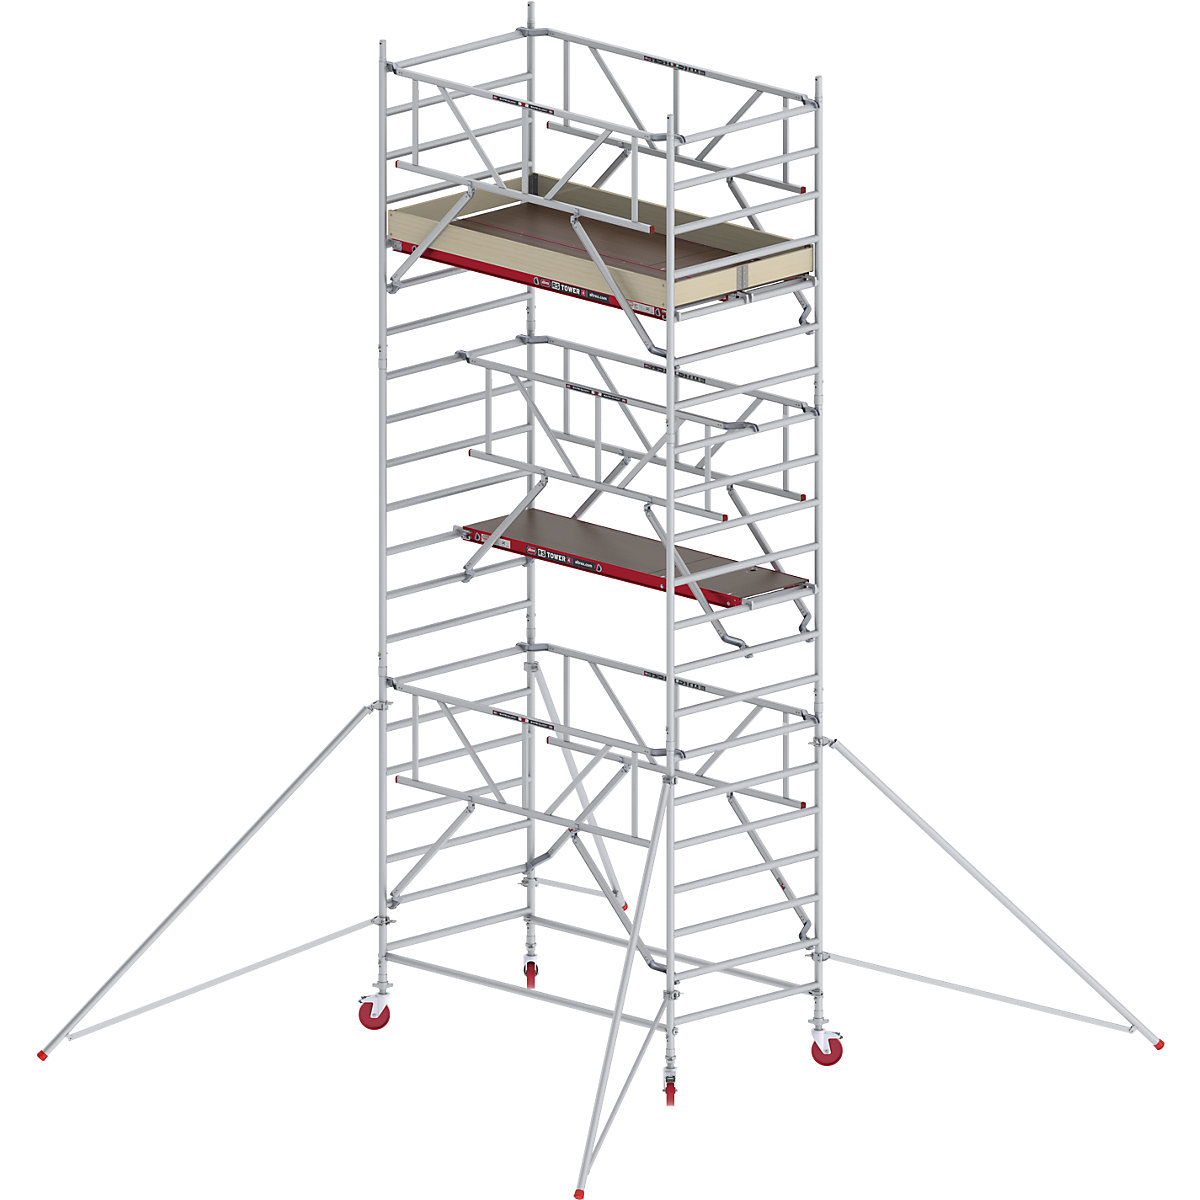 Fahrgerüst RS TOWER 42 breit mit Safe-Quick® Altrex, Holzplattform, Länge 1,85 m, Arbeitshöhe 7,20 m